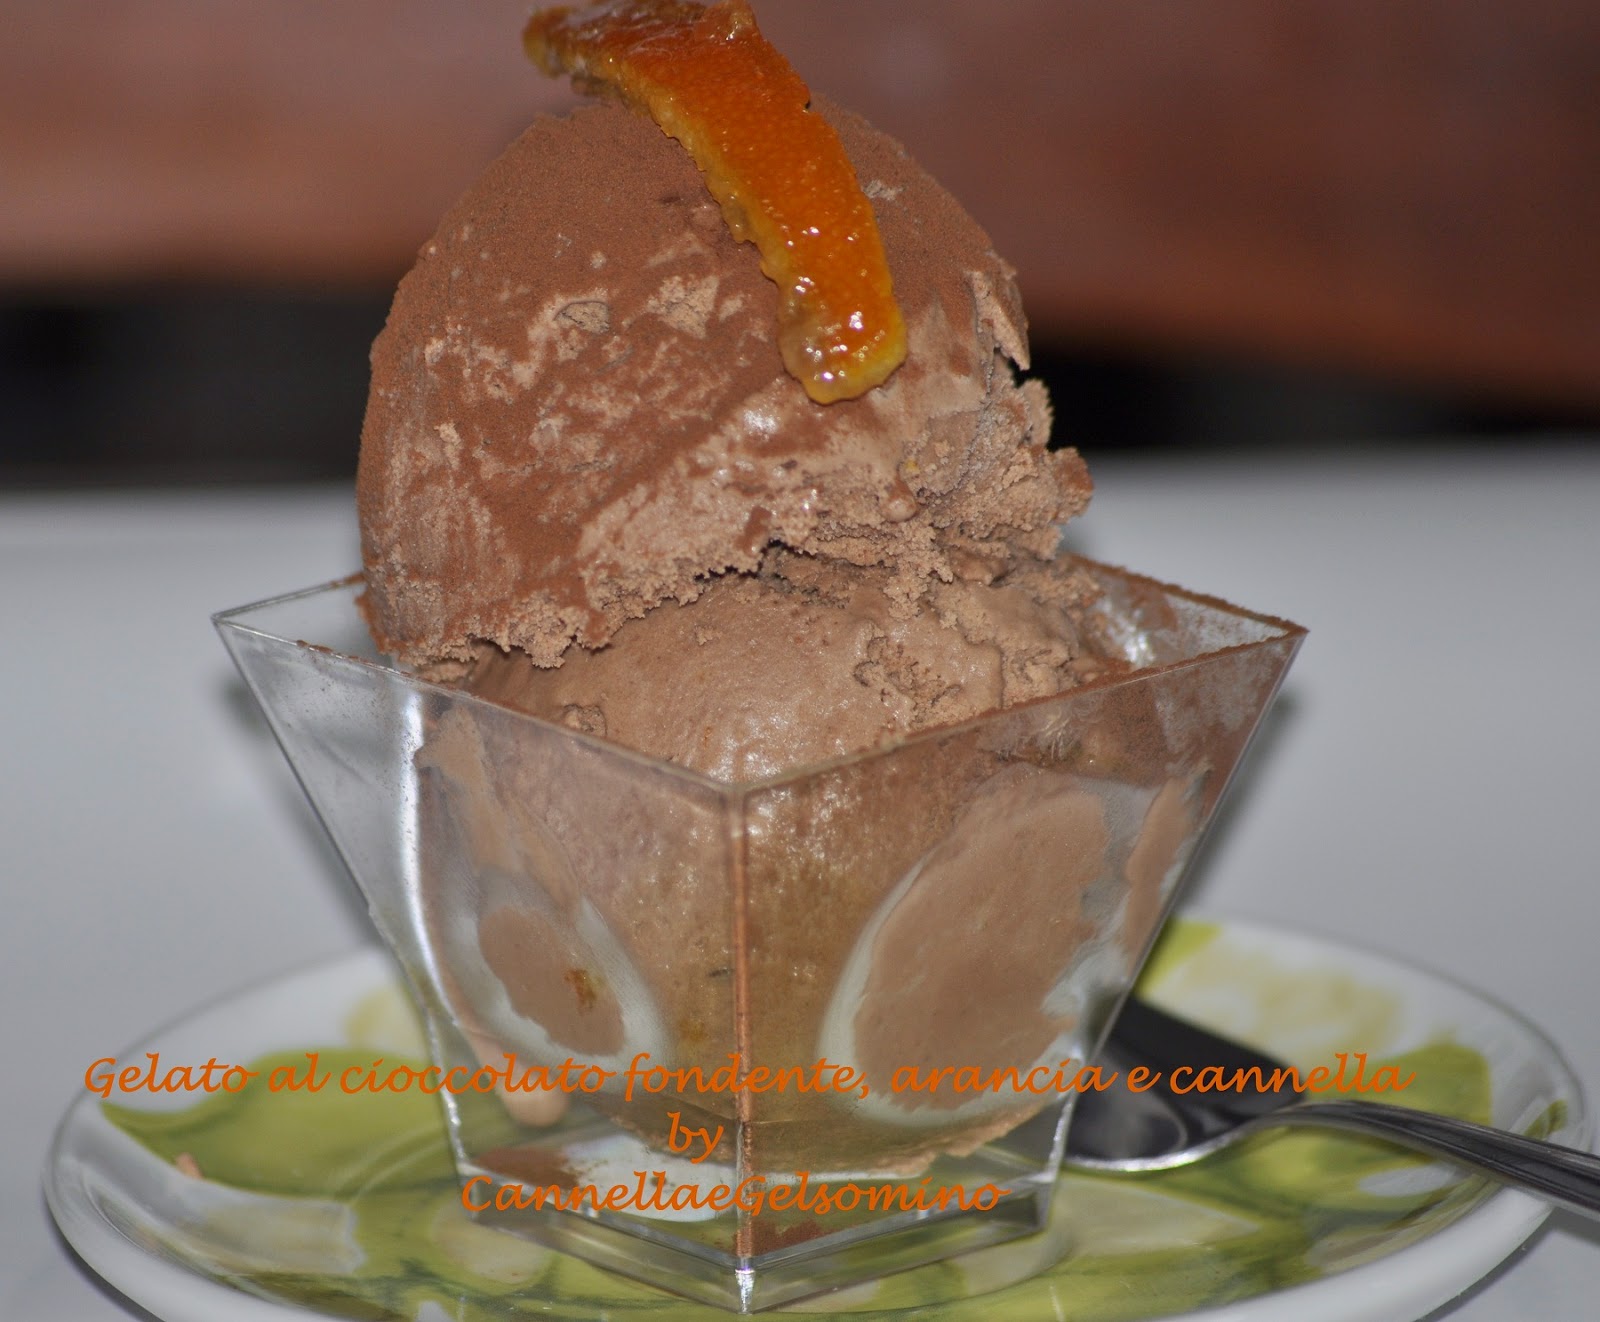 gelato al cioccolato fondente, arancia e cannella